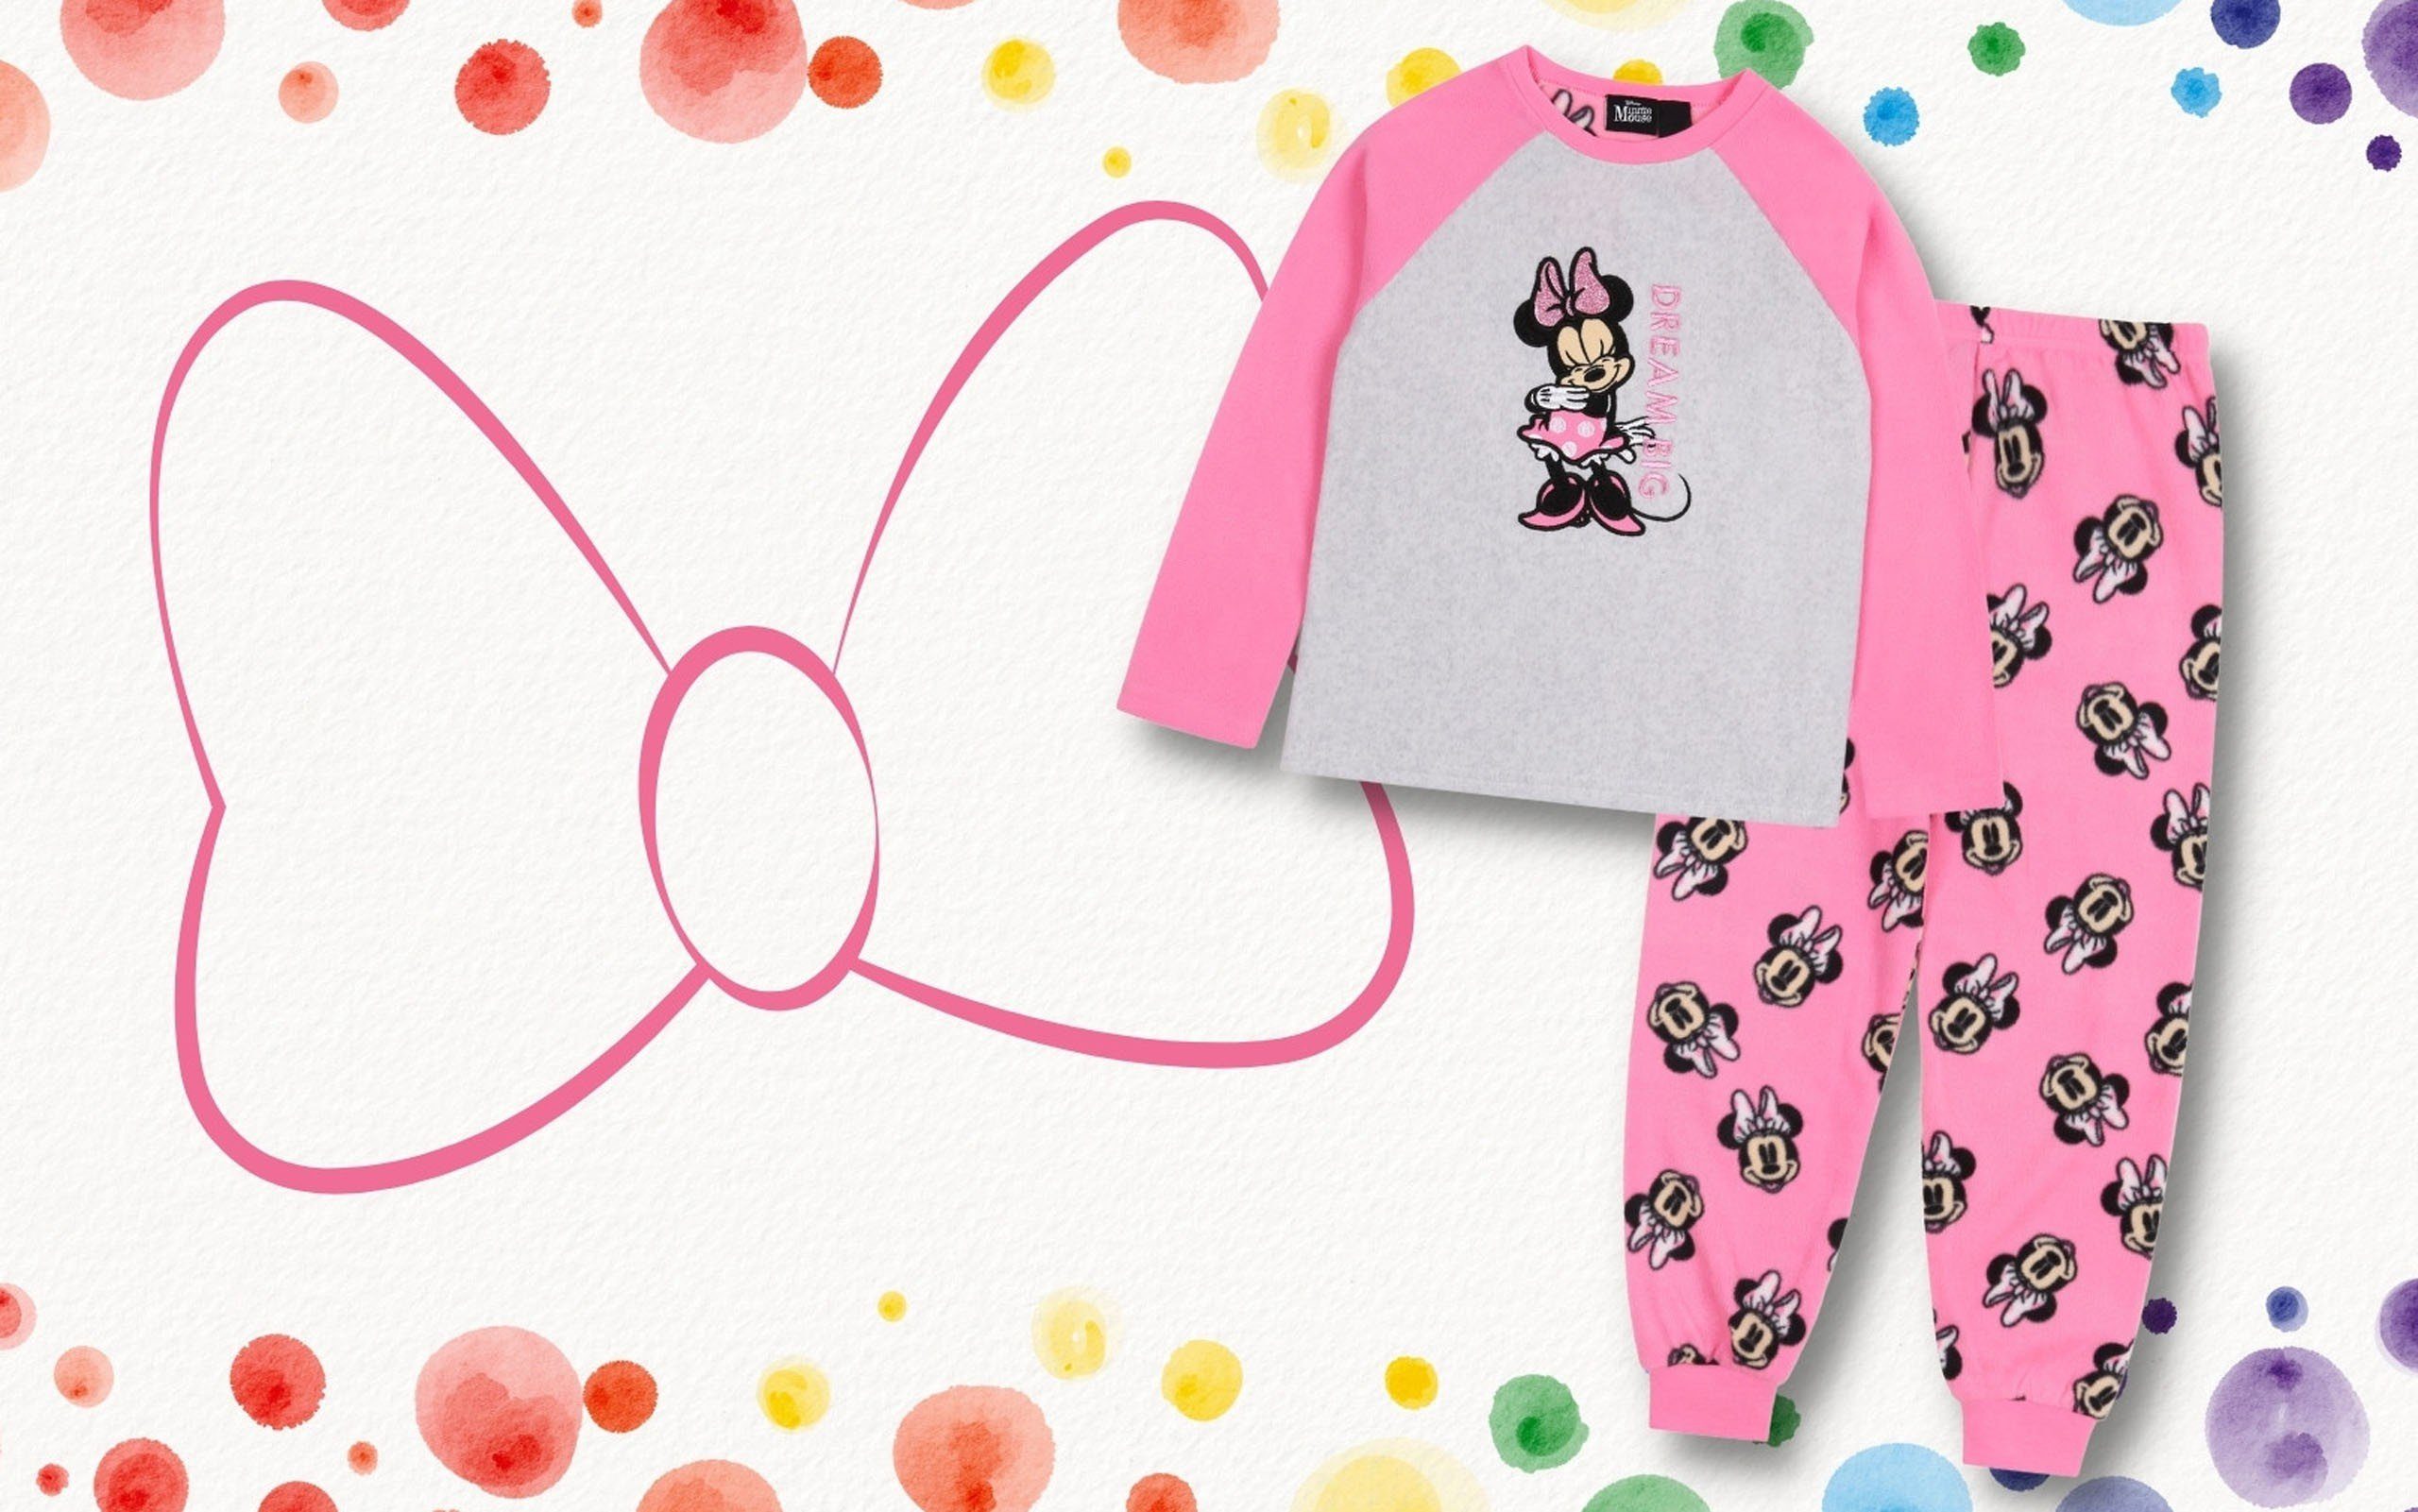 7-8 DISNEY Maus Mädchen Jahre Minnie pink-grau, Schlafanzug, Sarcia.eu Schlafanzug